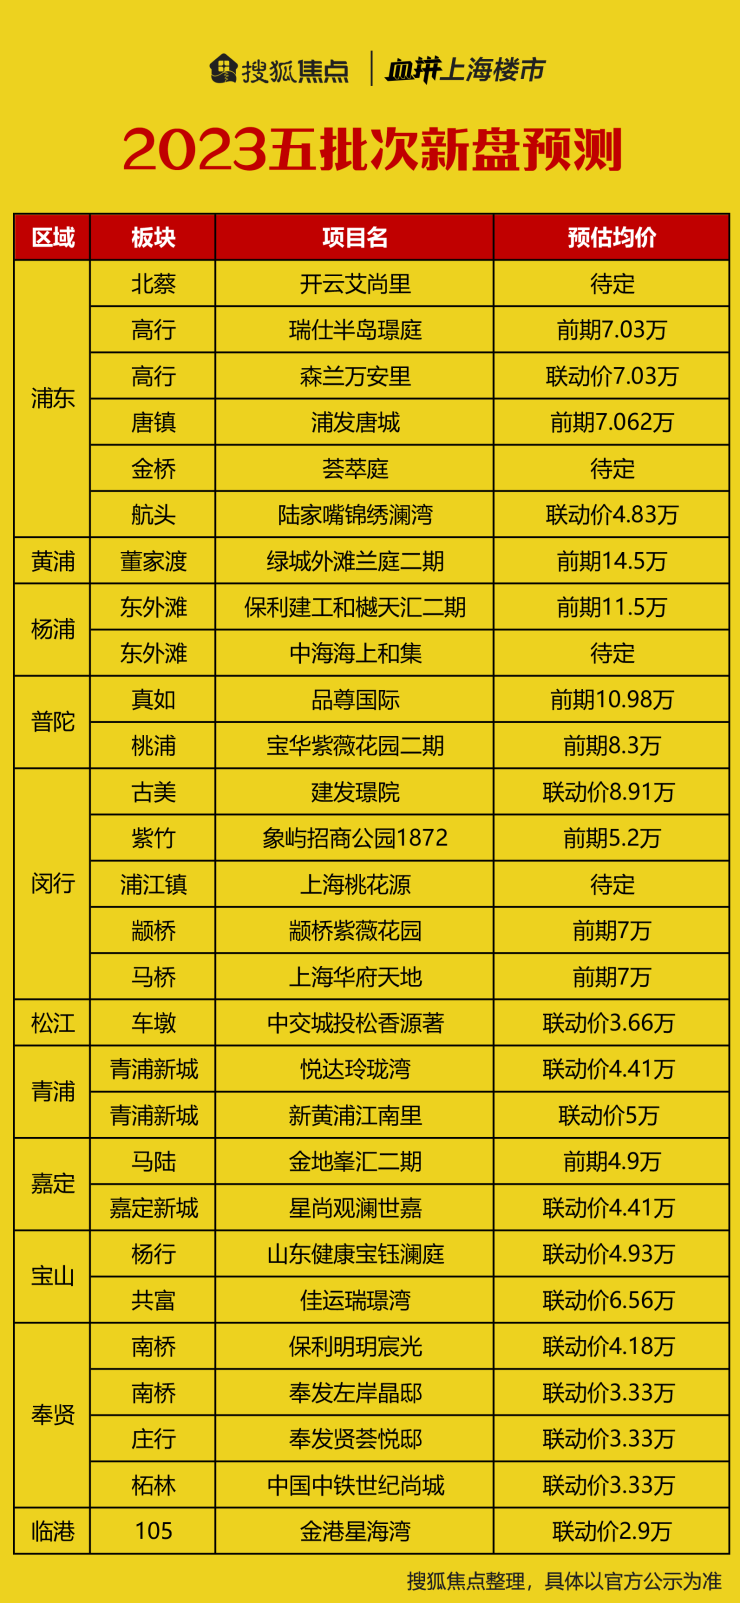 上海第五批次新房预测名单...